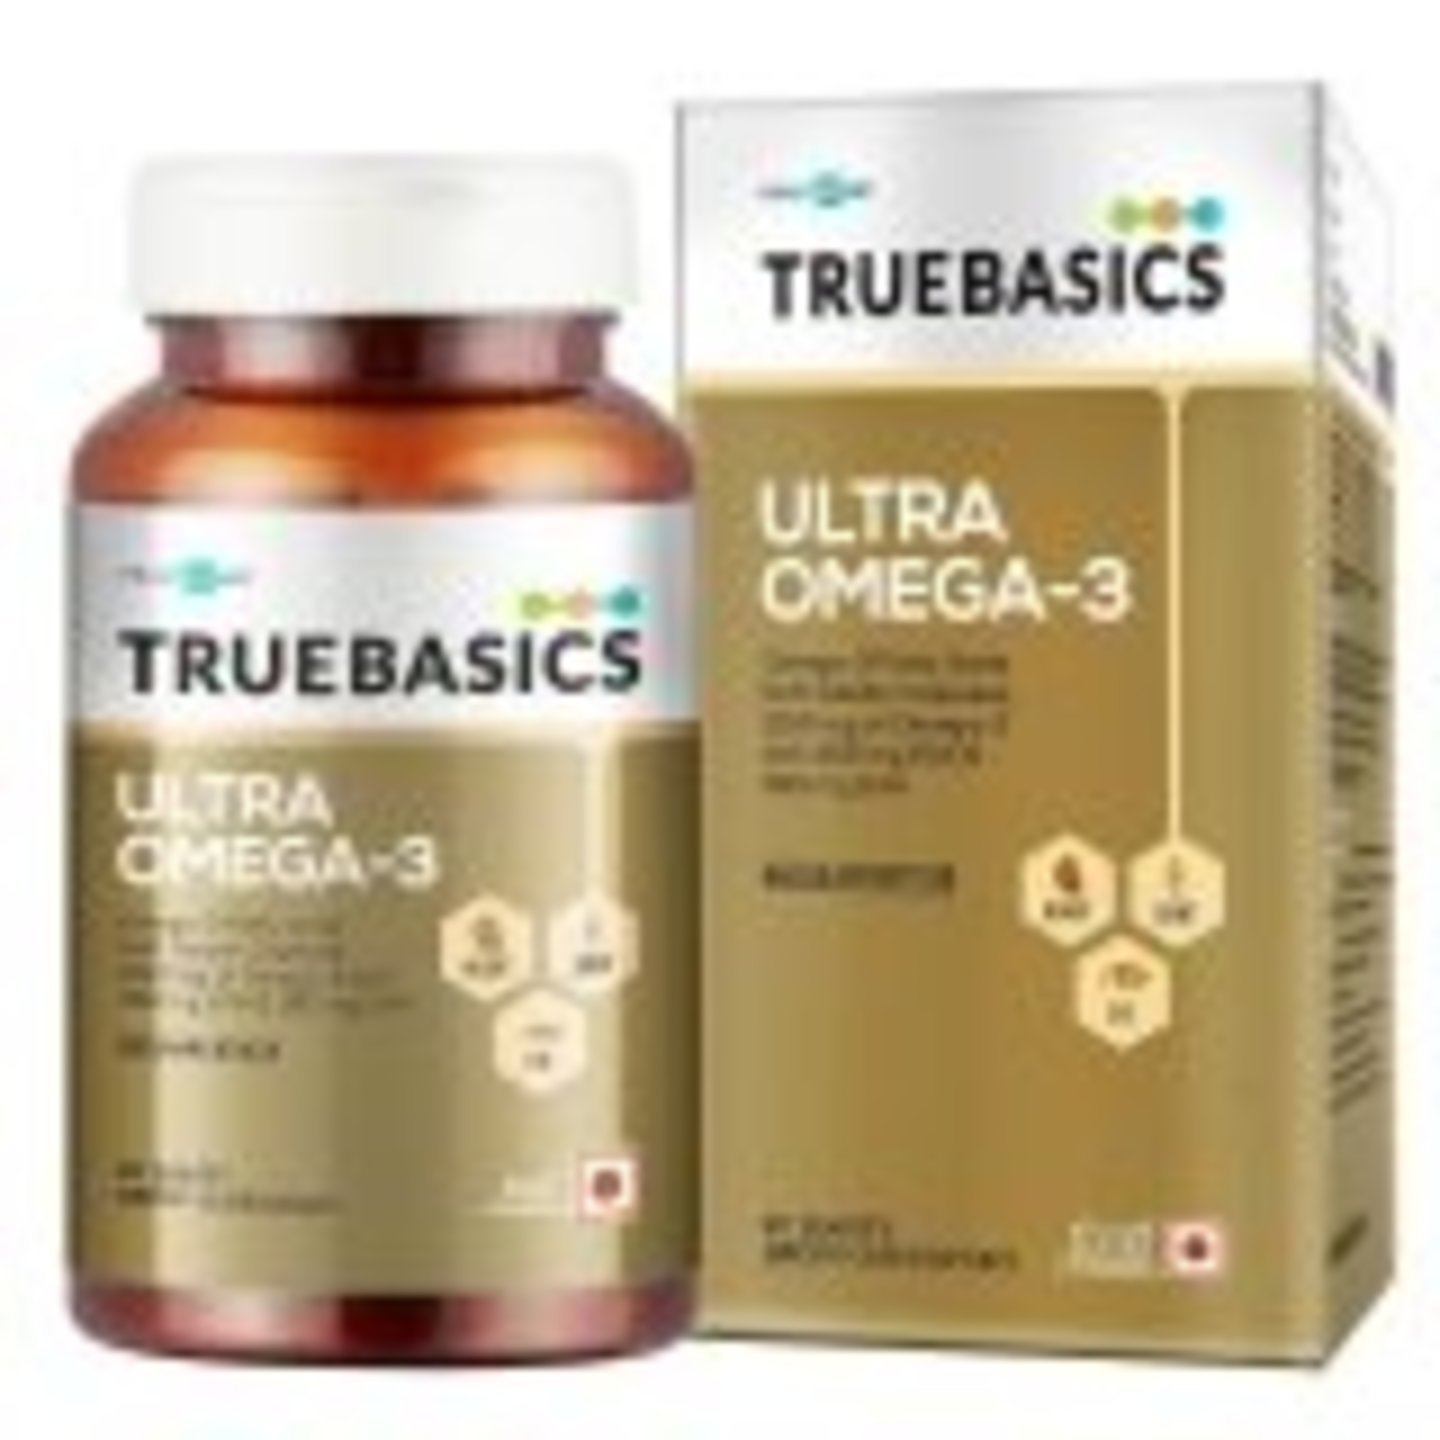 MastMart TrueBasics Ultra Omega-3, 30 capsules